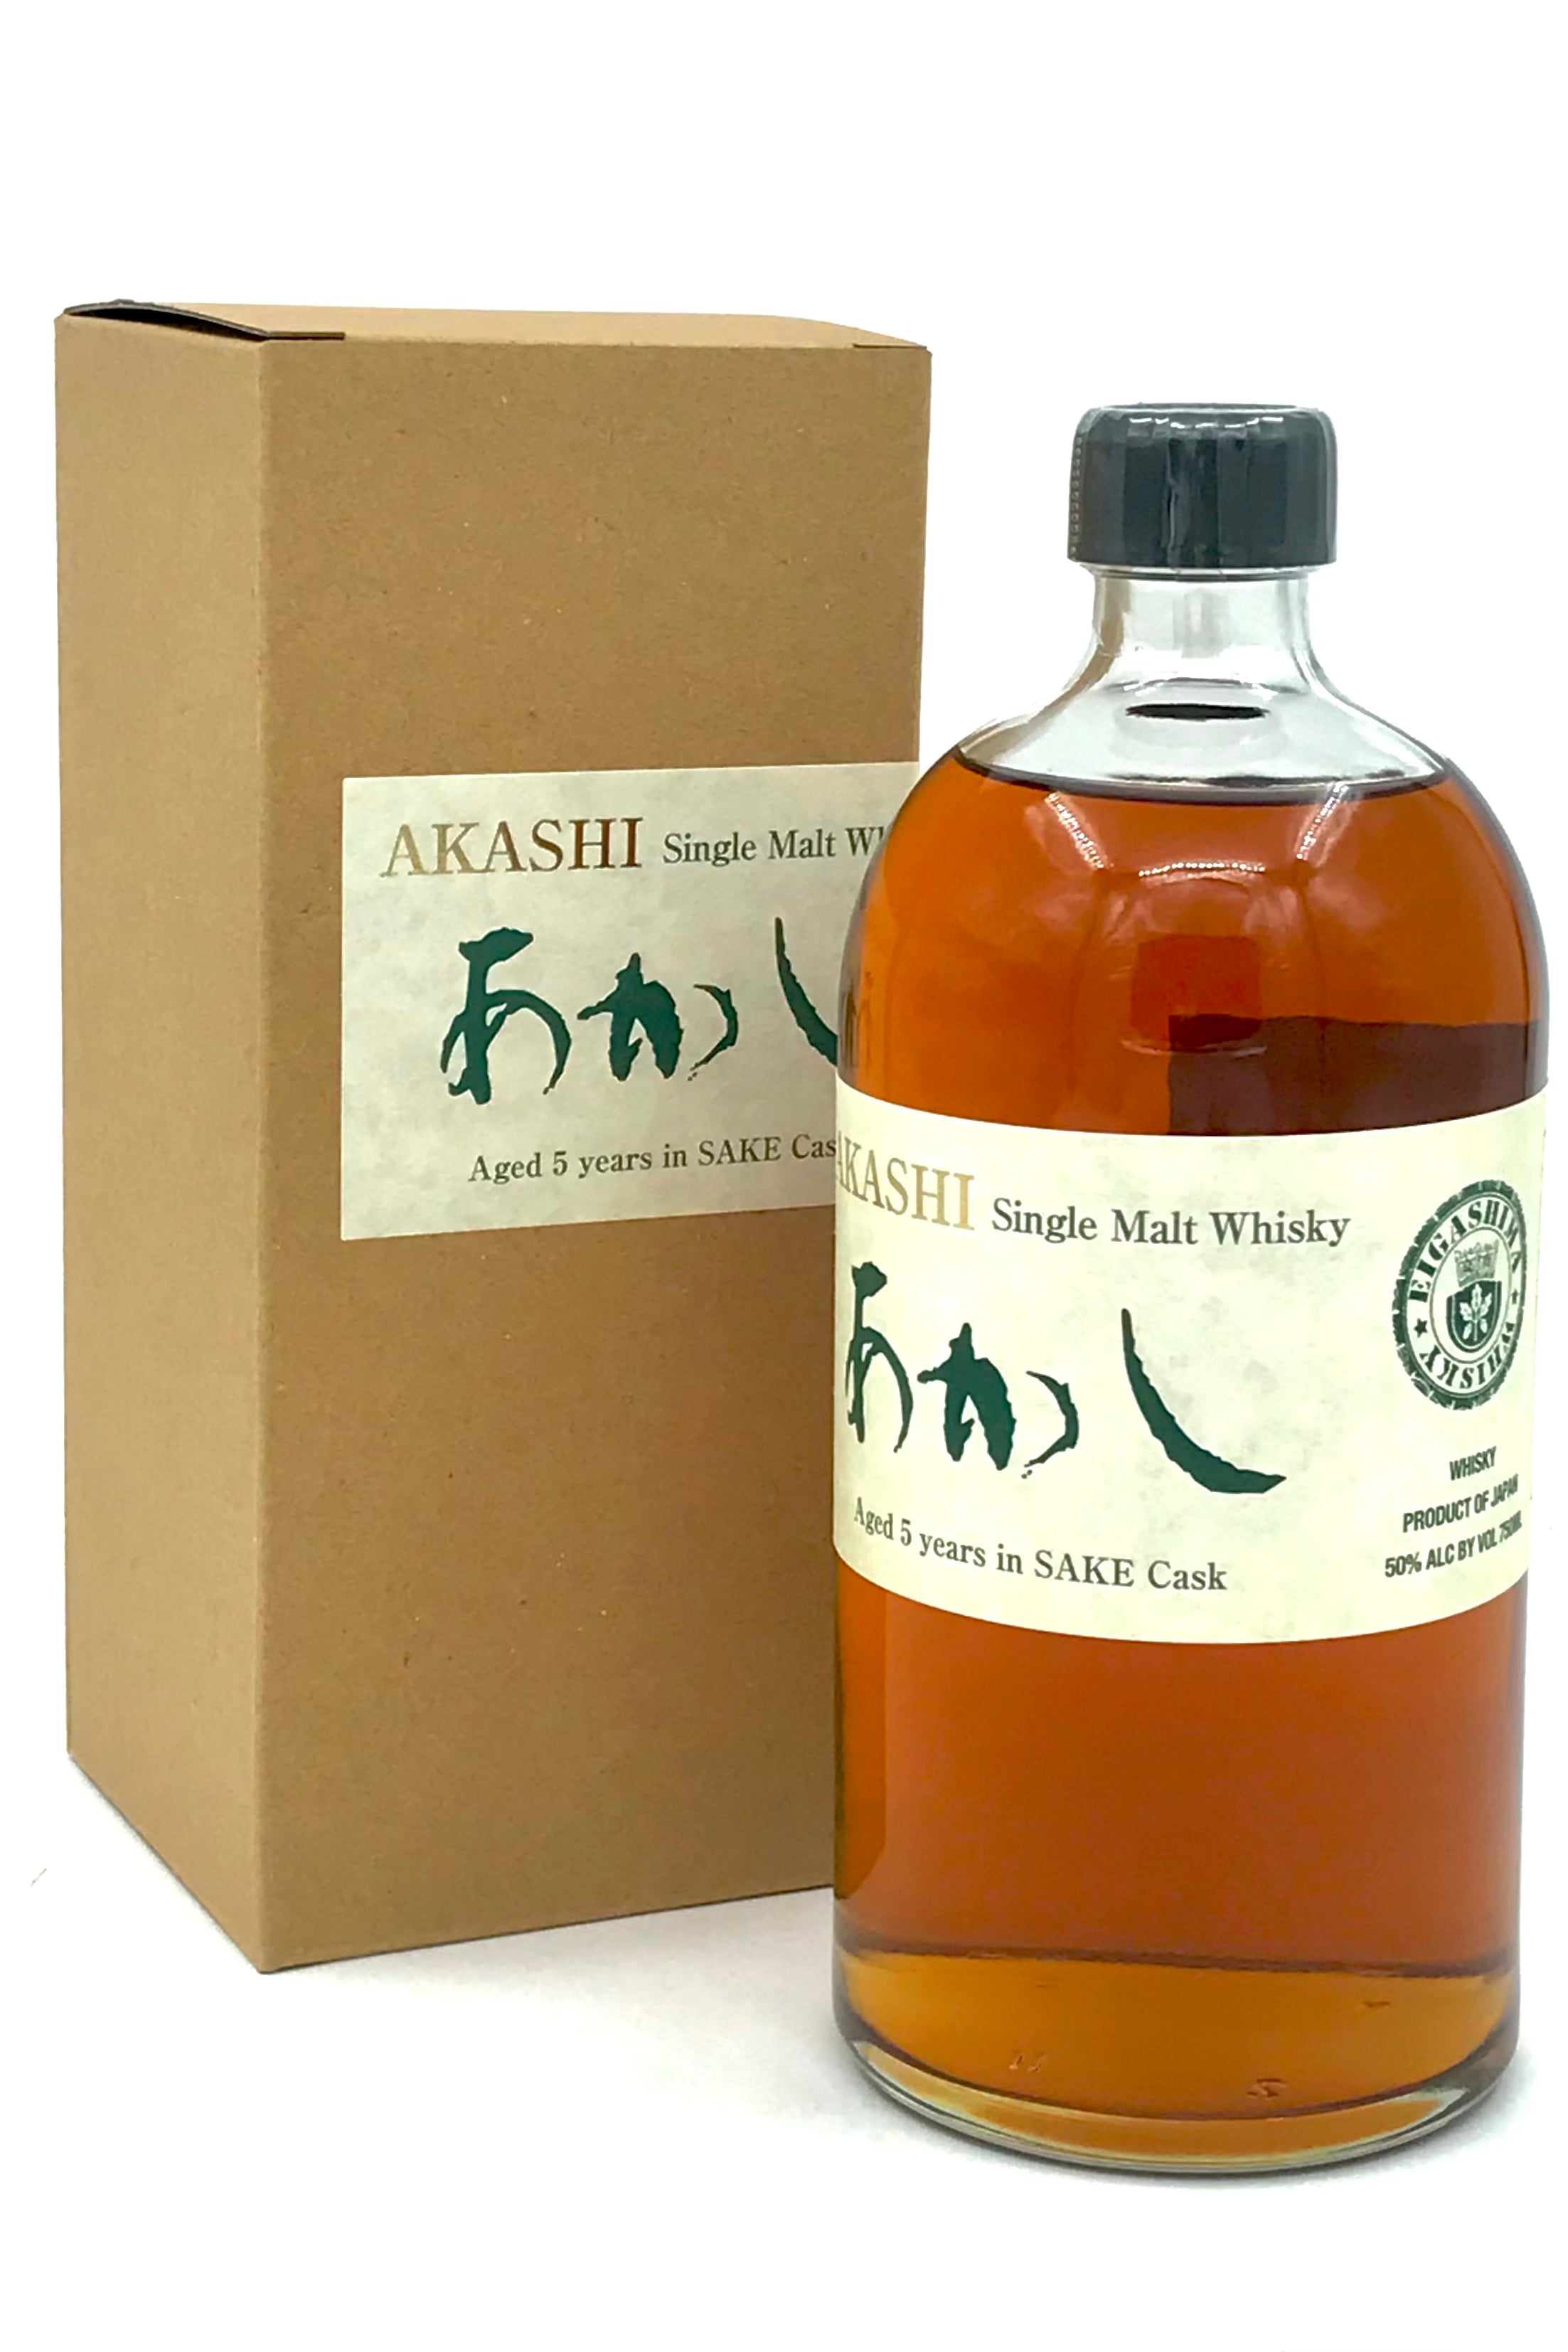 Akashi - Japanese Single Malt Whisky